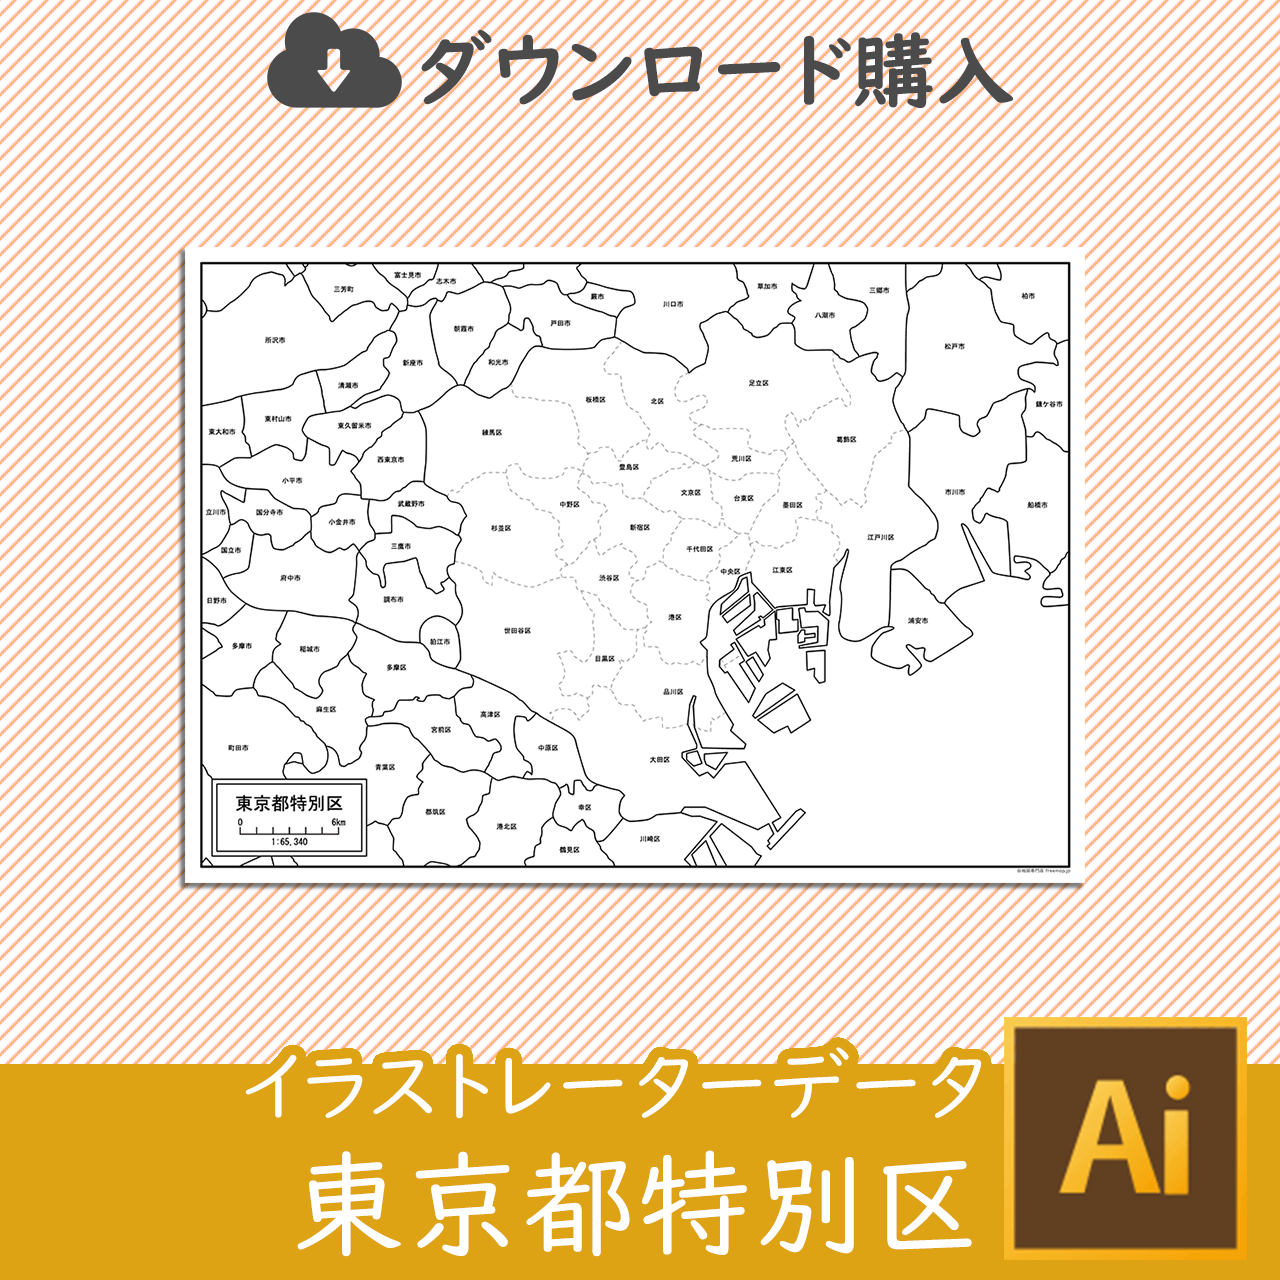 東京都特別区（２３区）のaiデータのサムネイル画像